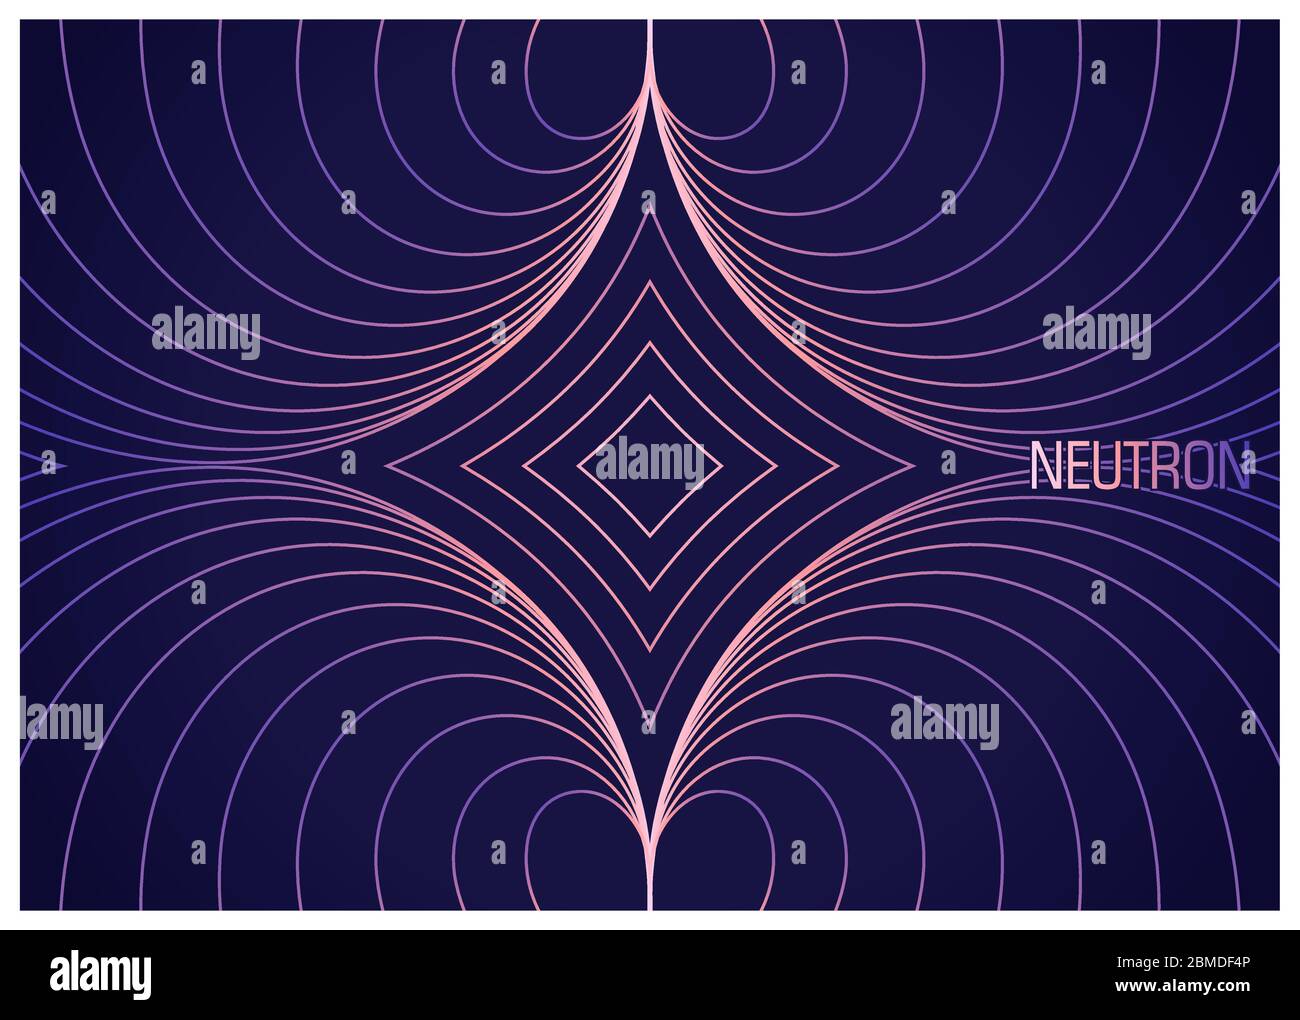 Neutroni. Composizione colorata con linee ondulate. Immagine astratta di particelle fisiche elementari. Progettazione concettuale la teoria della scienza. Rapporto di illustrazione del vettore Illustrazione Vettoriale